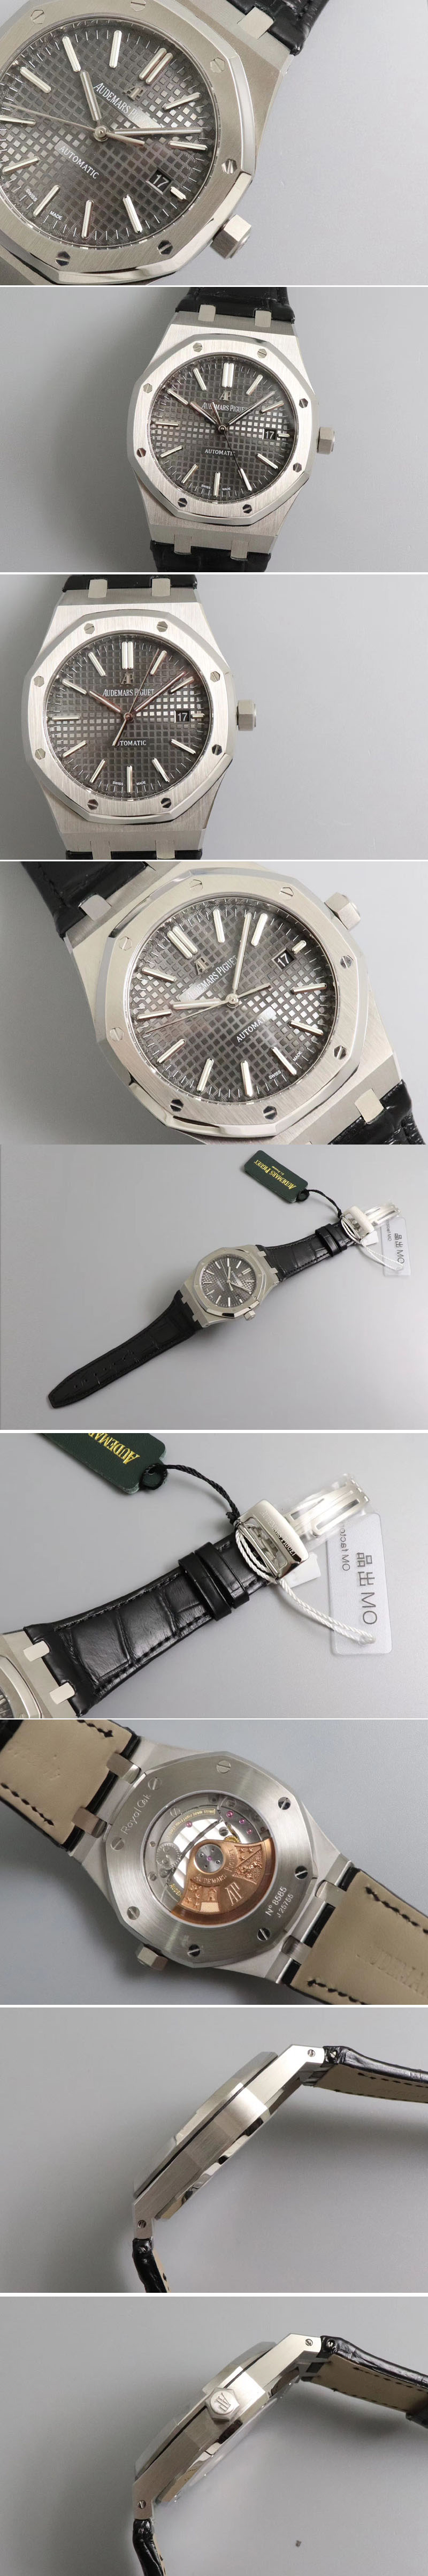 Replica Audemars Piguet Watches